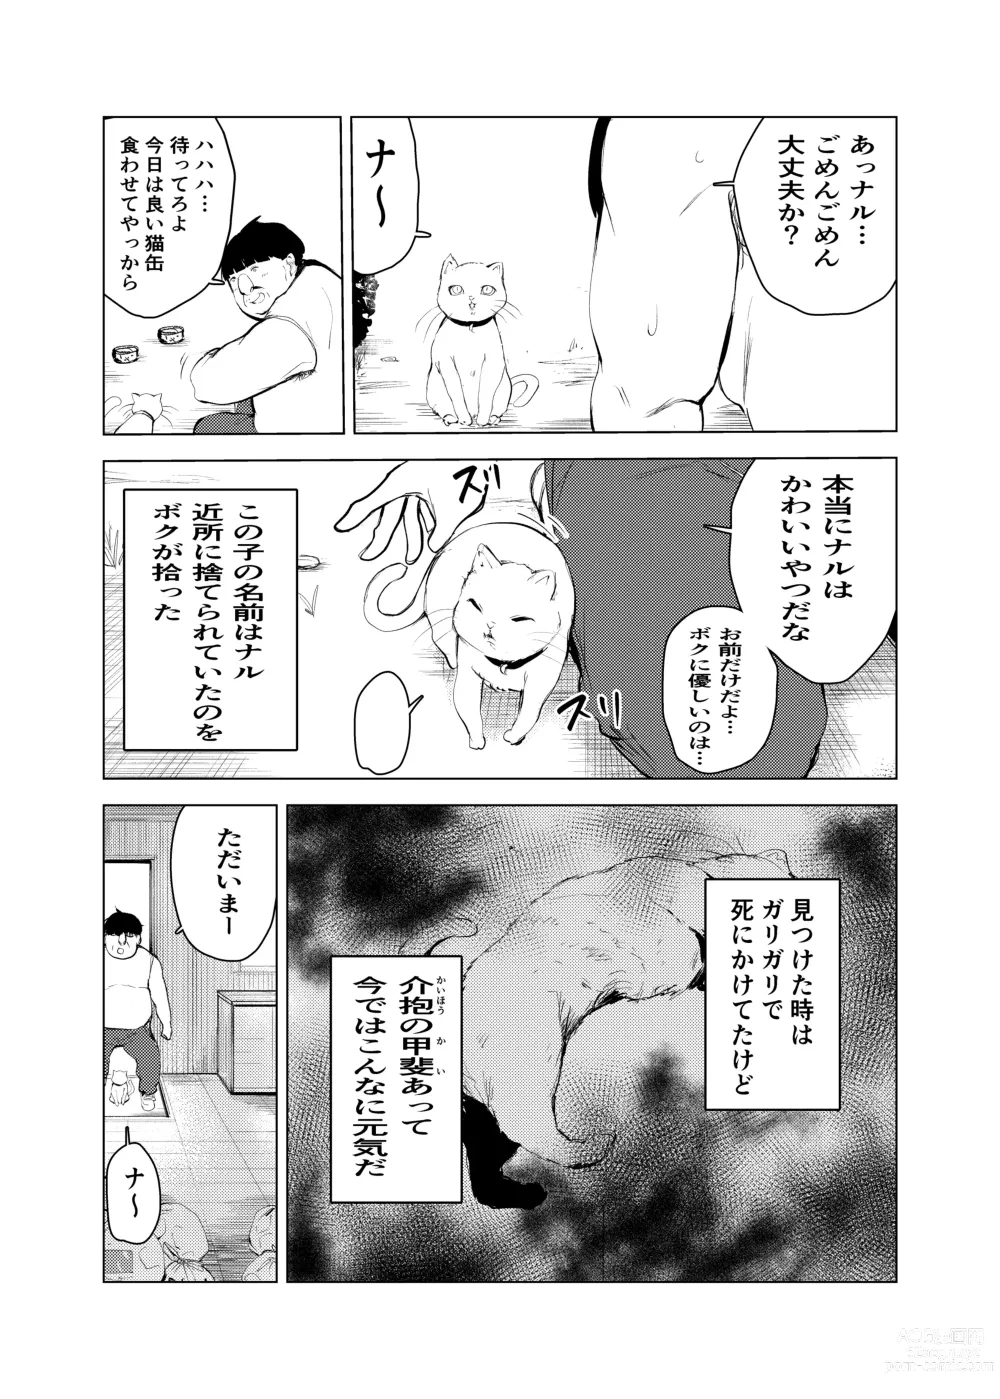 Page 10 of doujinshi Neko no Ongaeshi